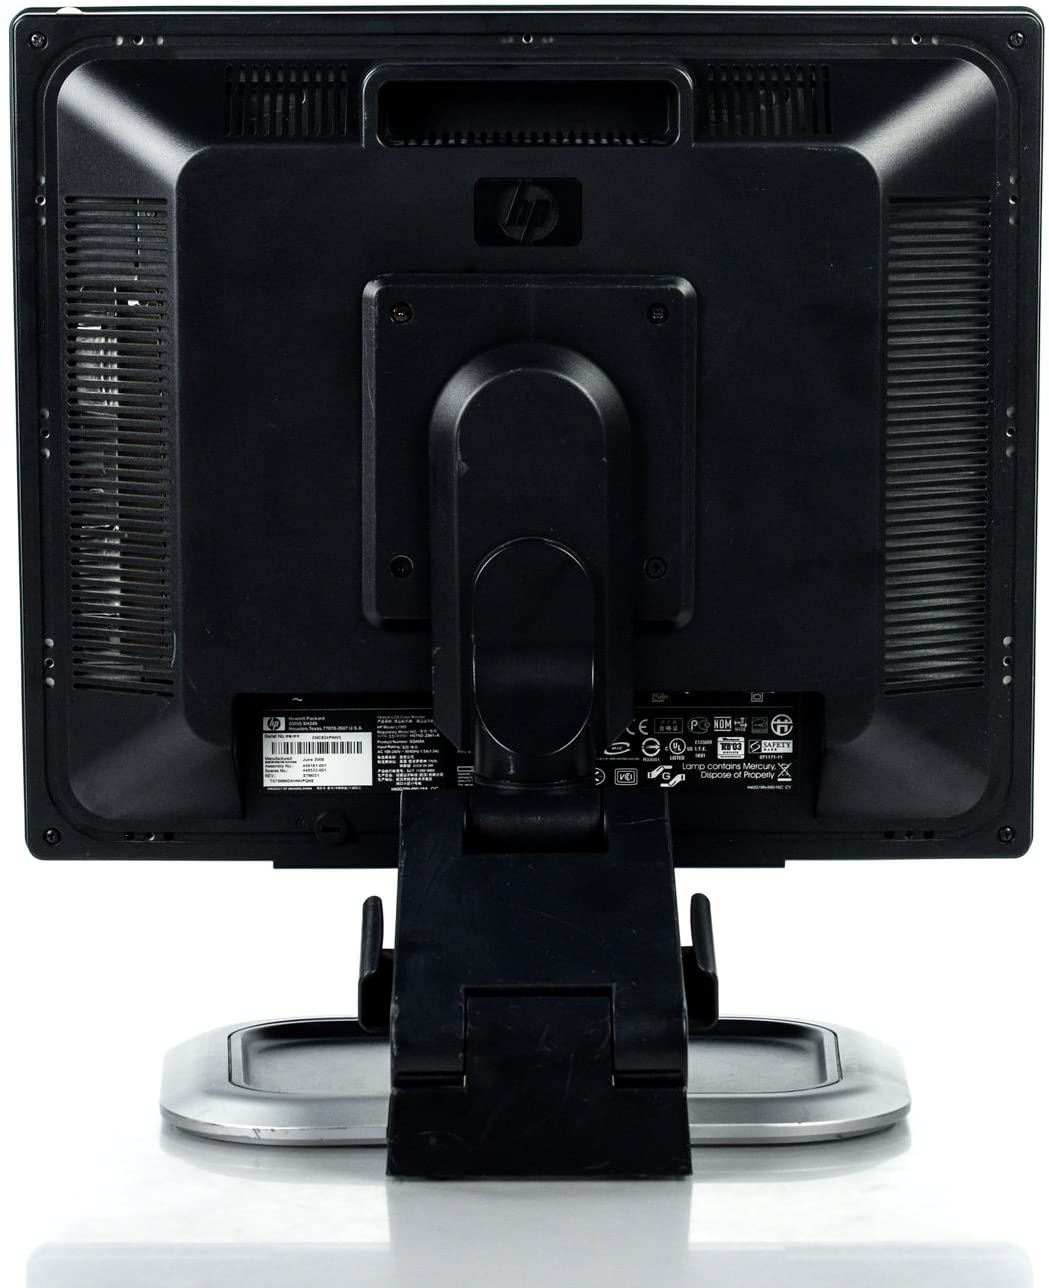 HP L1950g LCD-Monitor, 19 Zoll, 1280 x 1024 Pixel, Kontrast 800:1, Helligkeit 300 cd/m², Reaktionszeit 5 ms, VGA, USB, DVI